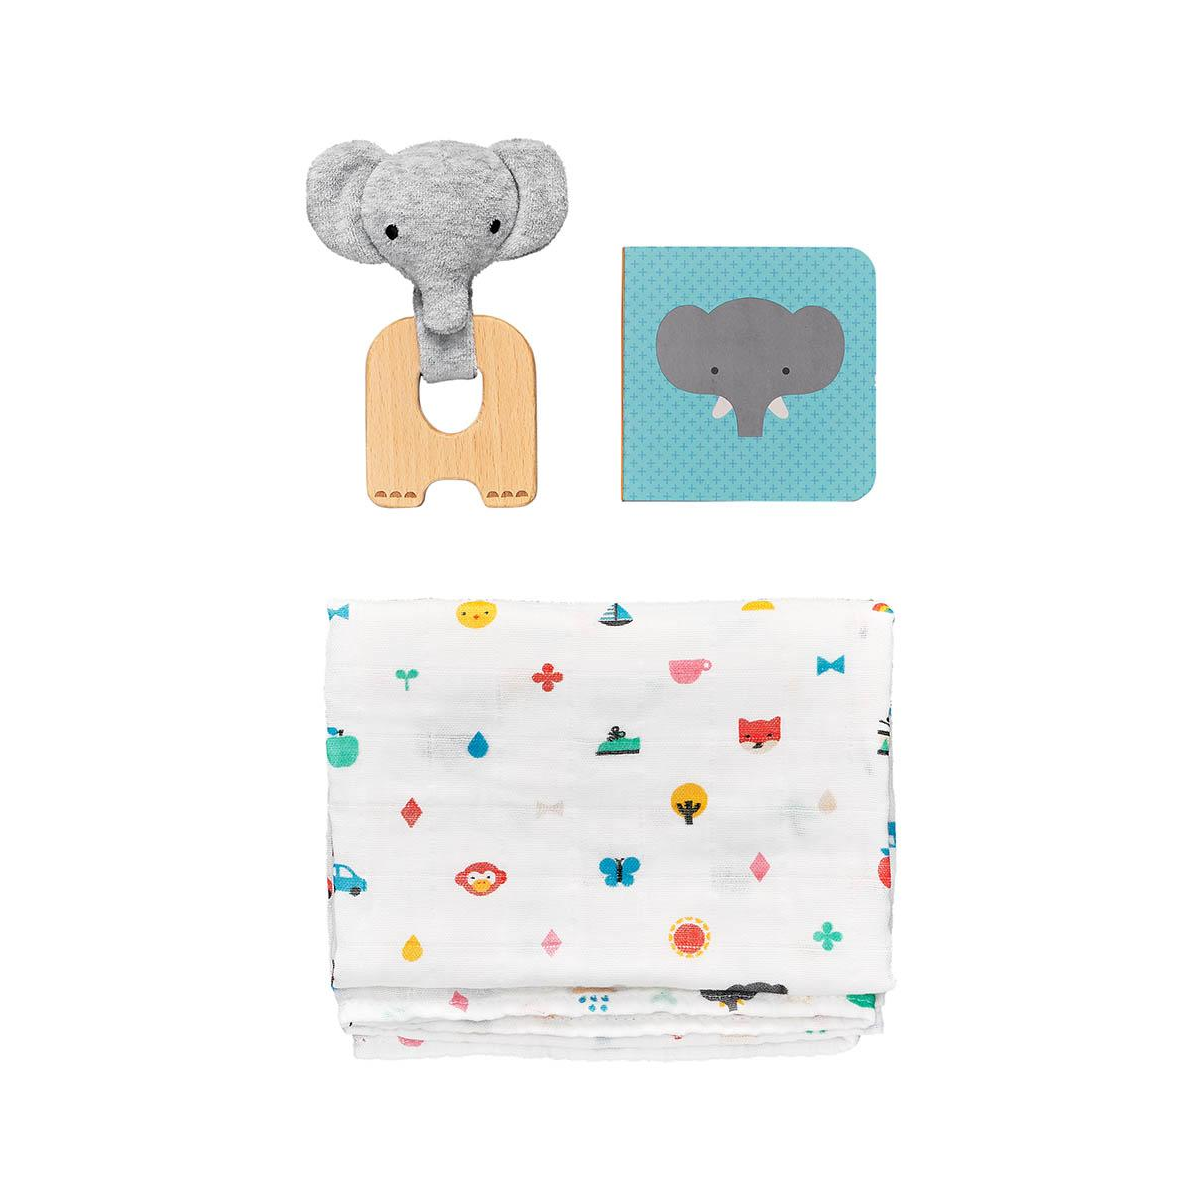 Set cadou pentru bebelusi - Little Elephant - Petit Collage